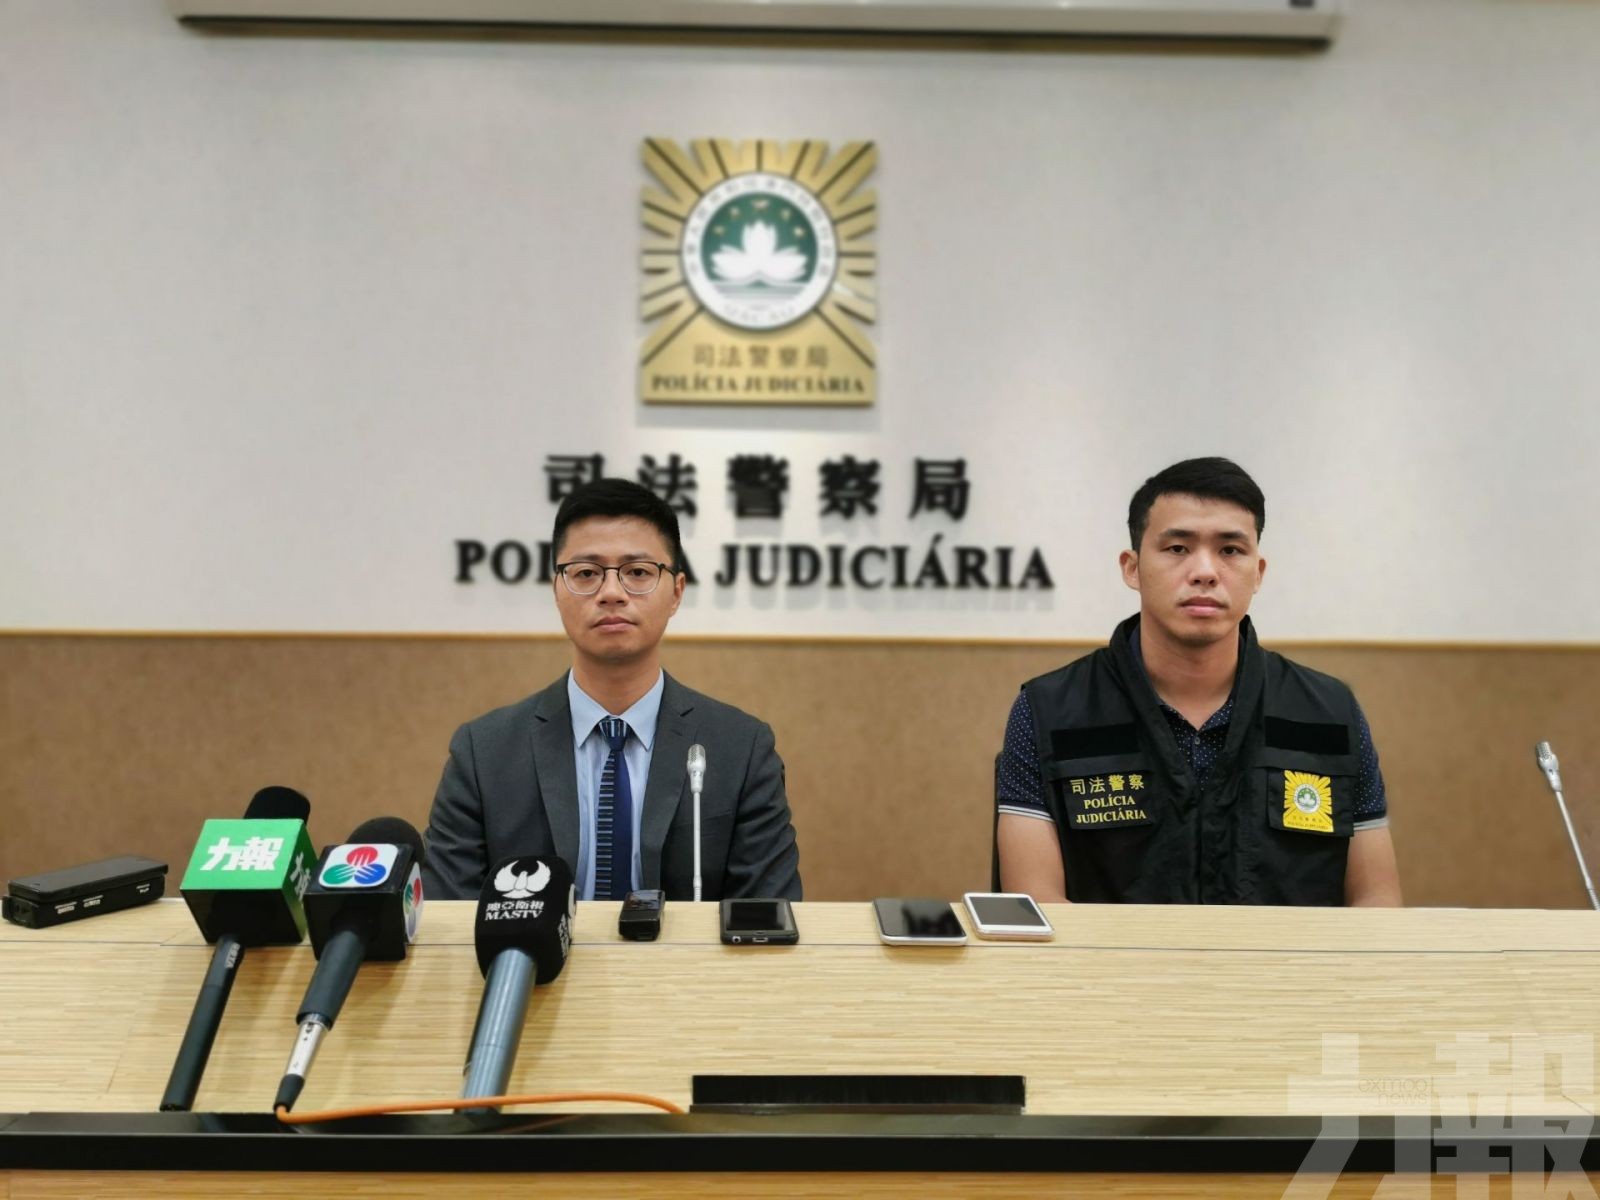 16歲香港男學生販毒被捕